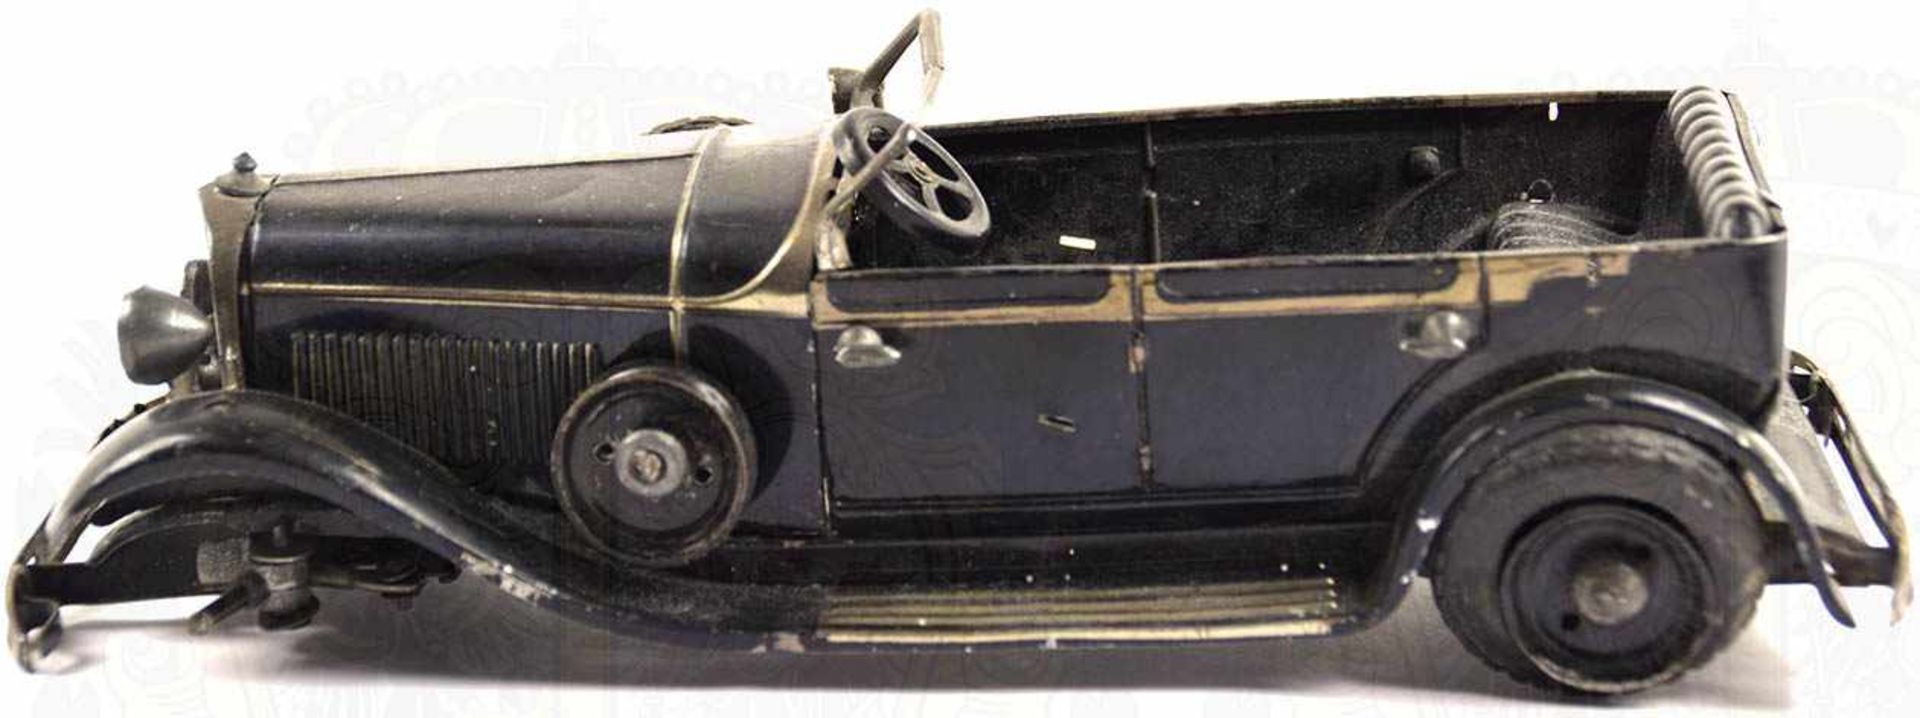 DIENSTWAGEN ADOLF HITLER, MERCEDES-BENZ 770, offener Wagen, Eisenblech, schwarz lackiert, - Bild 3 aus 3